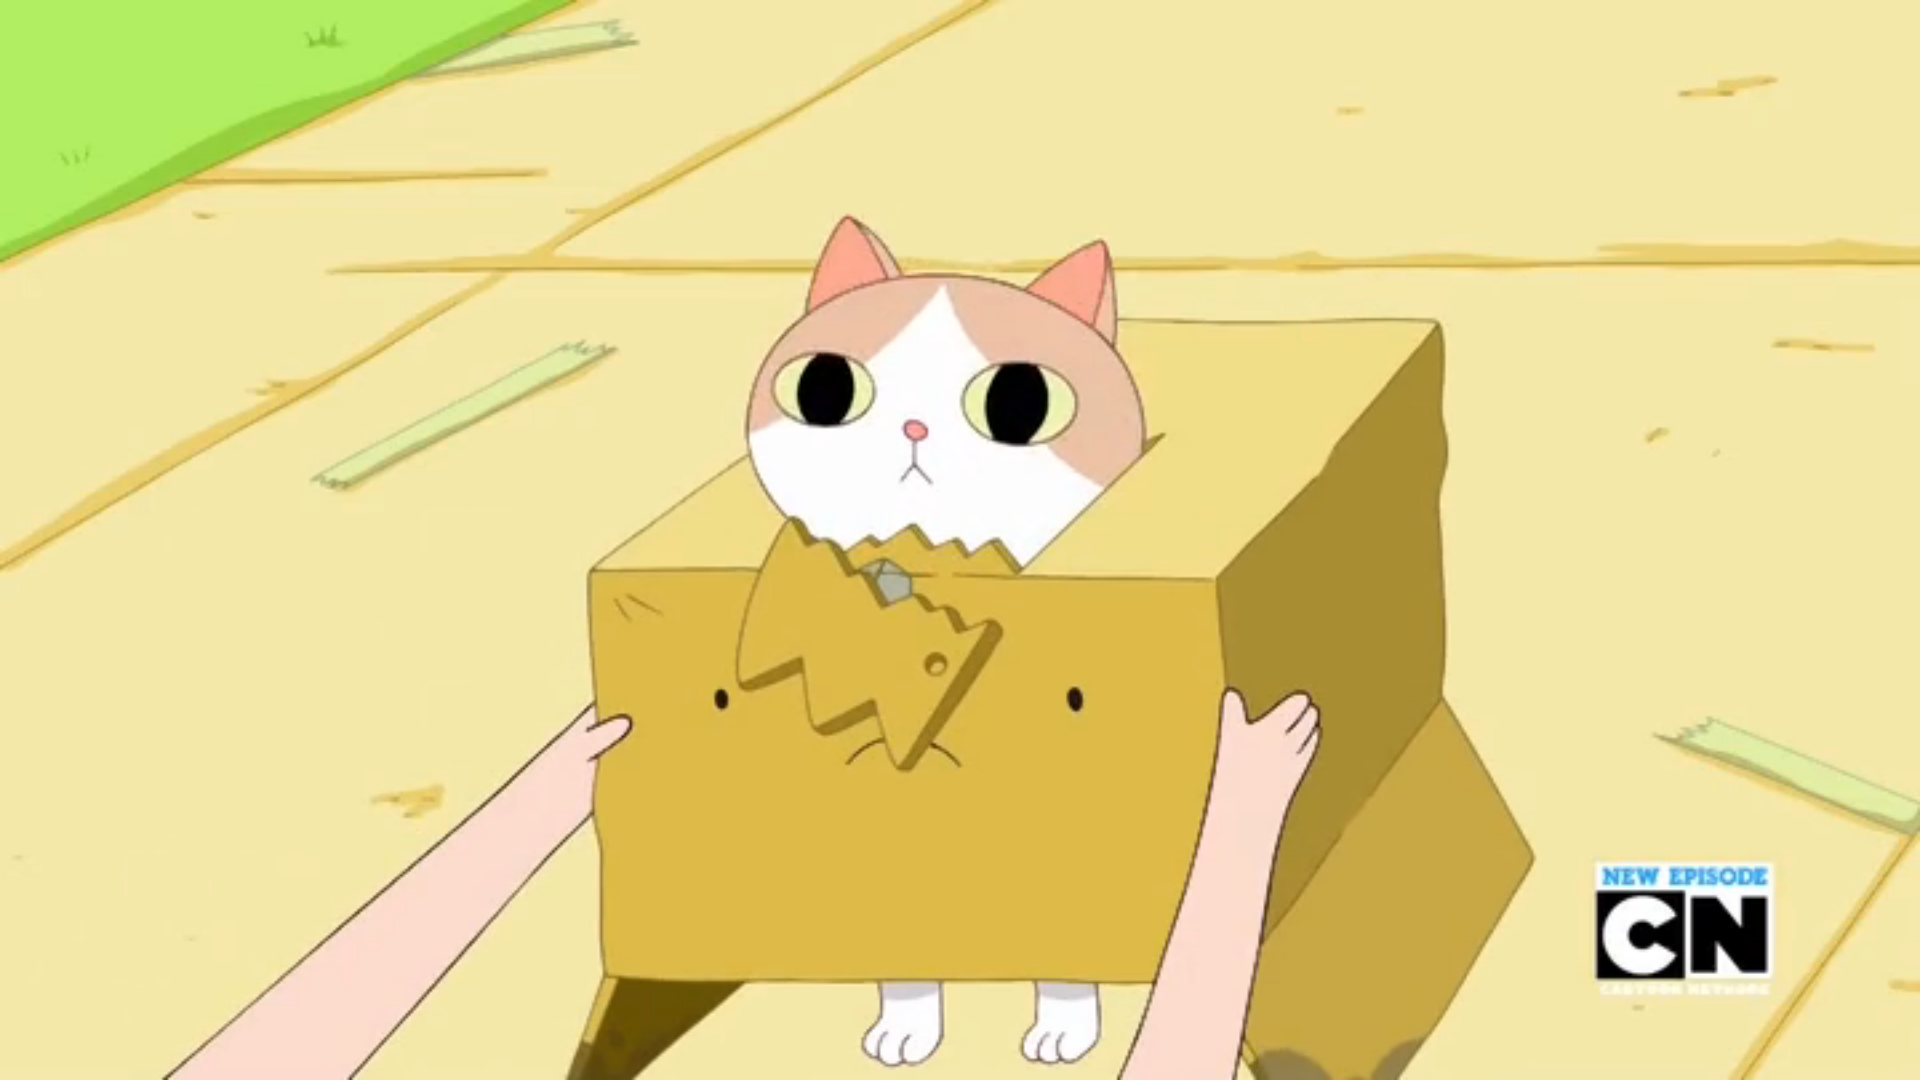 Anime Cat in Box